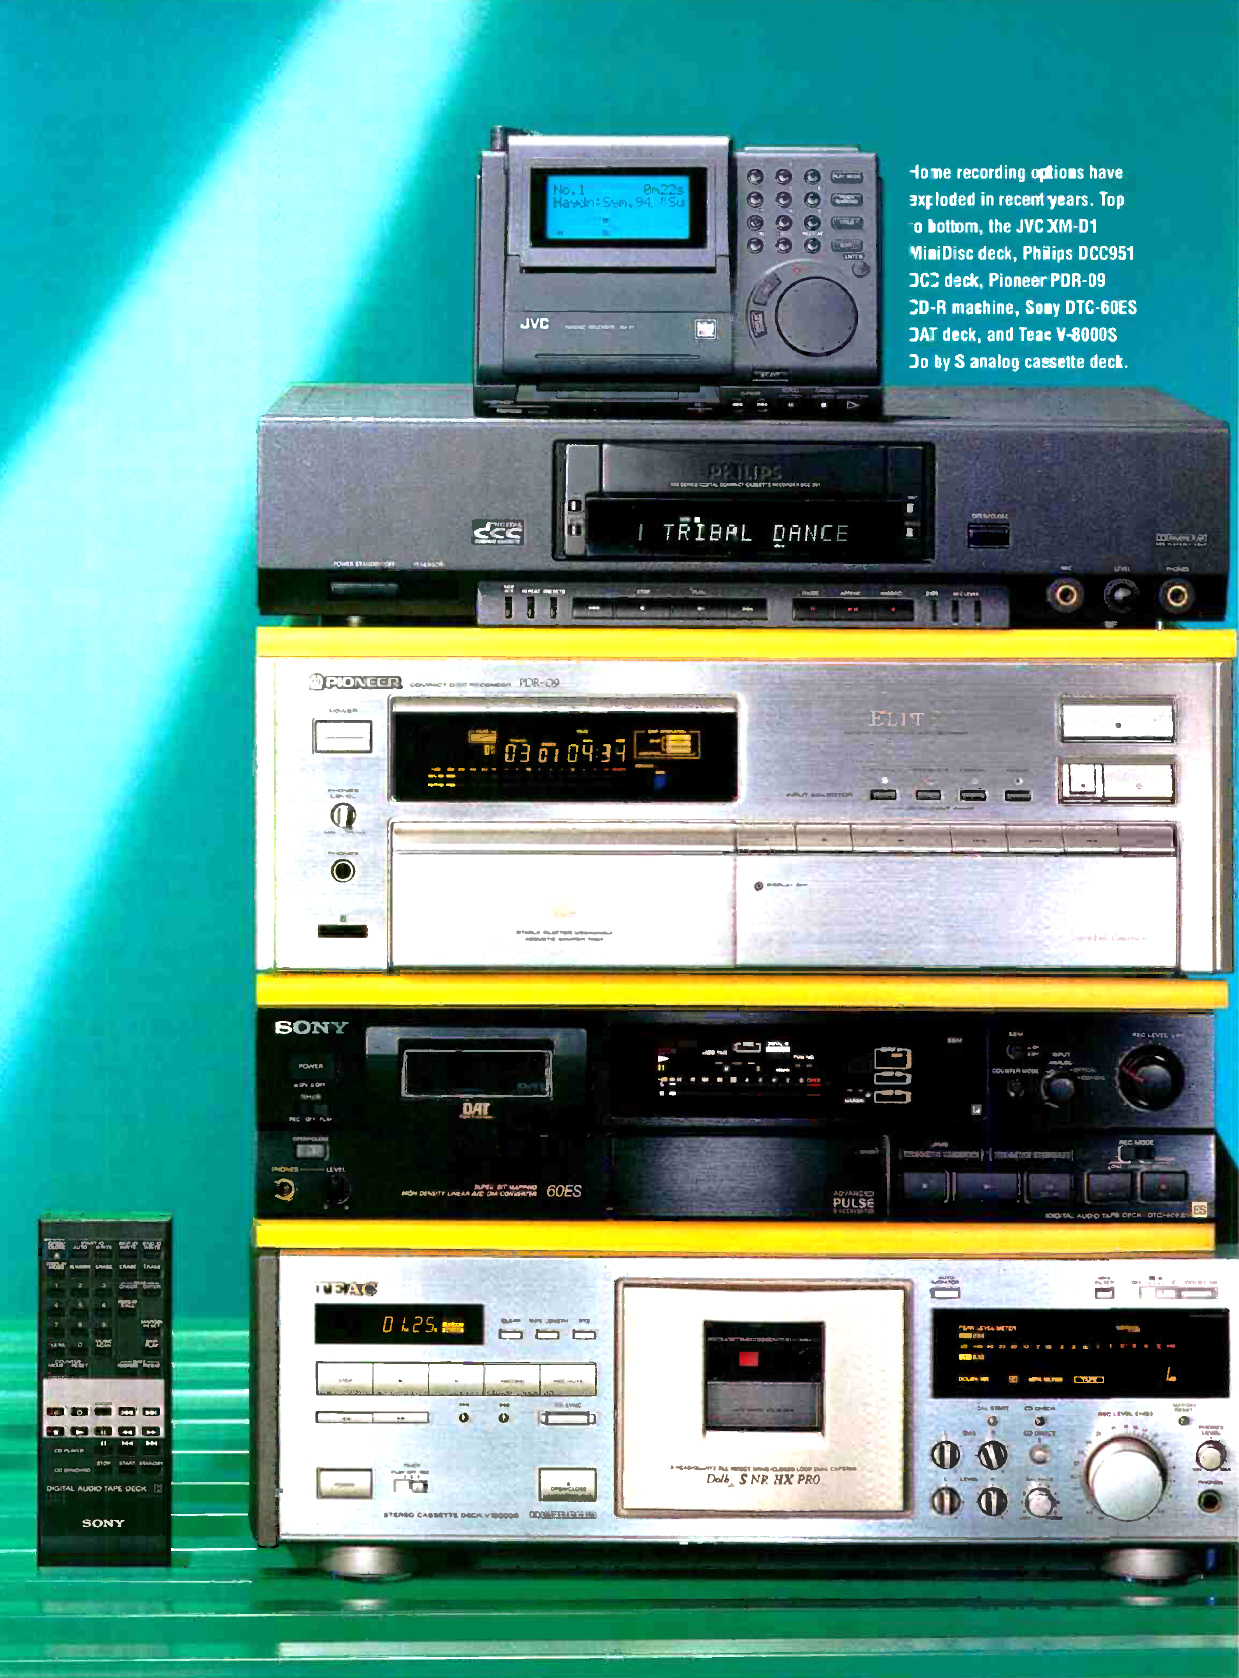 Pioneer PDR-09-Werbung-1995.jpg